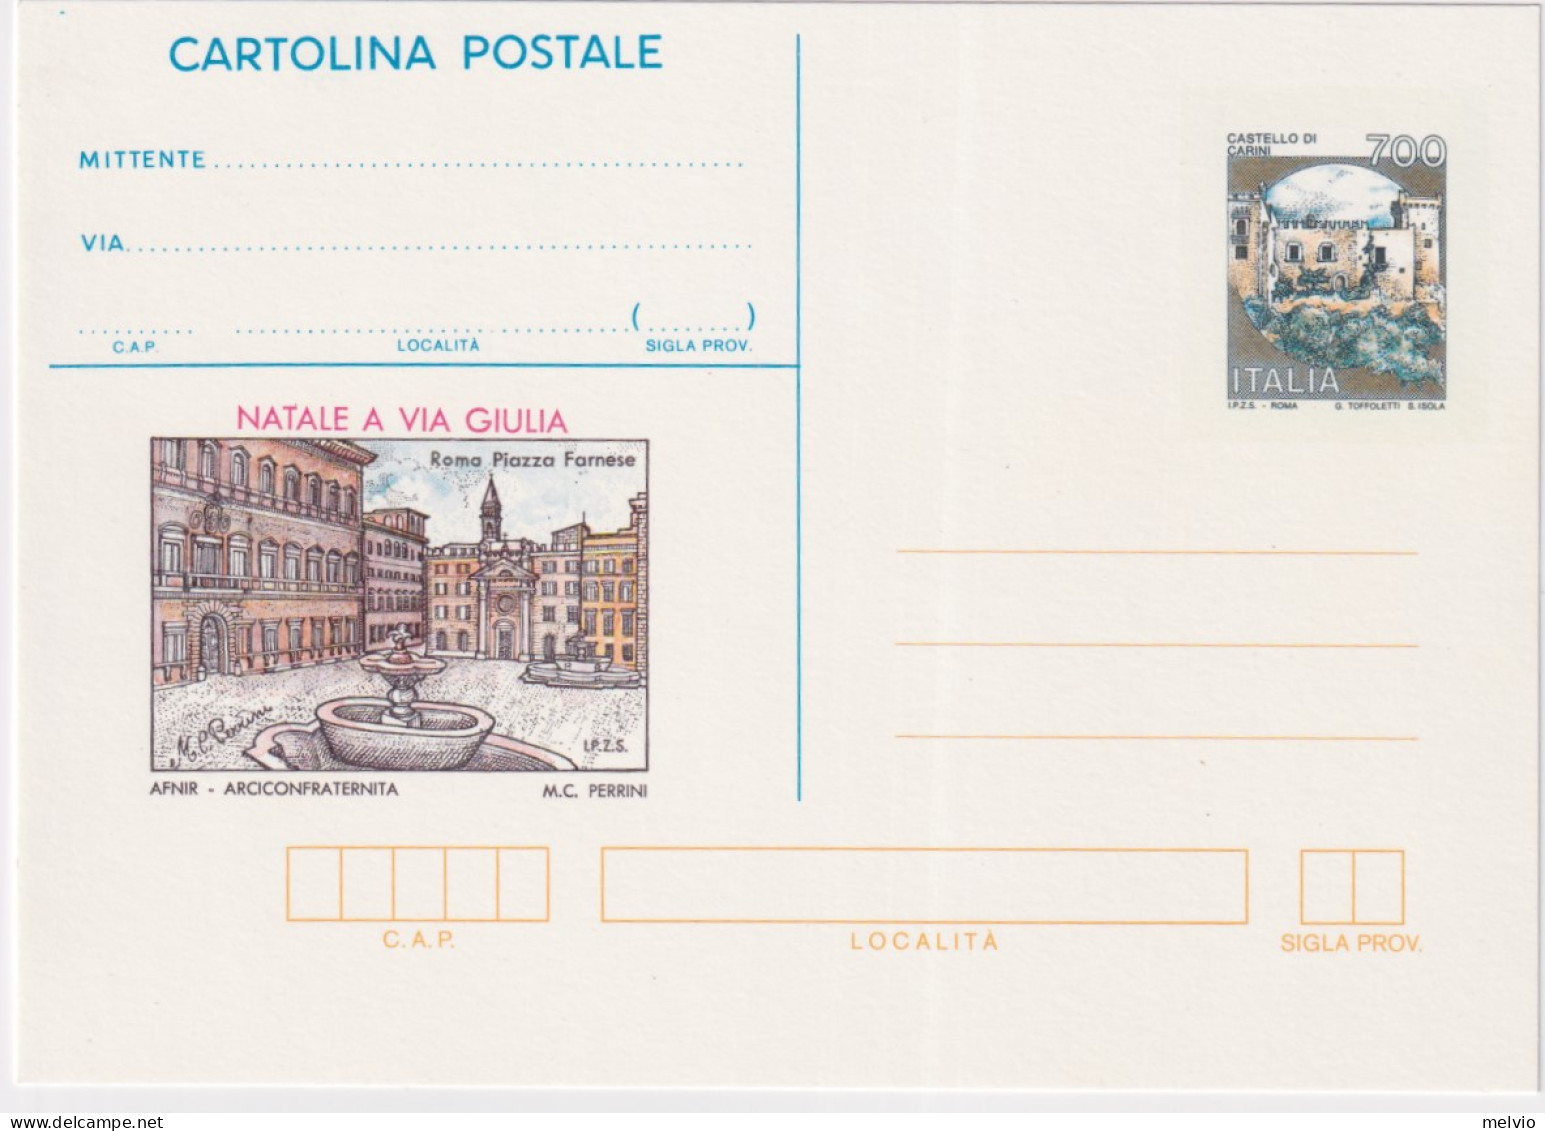 1993-NATALE A VIA GIULIA Cartolina Postale IPZS Lire 700 Nuova - Interi Postali